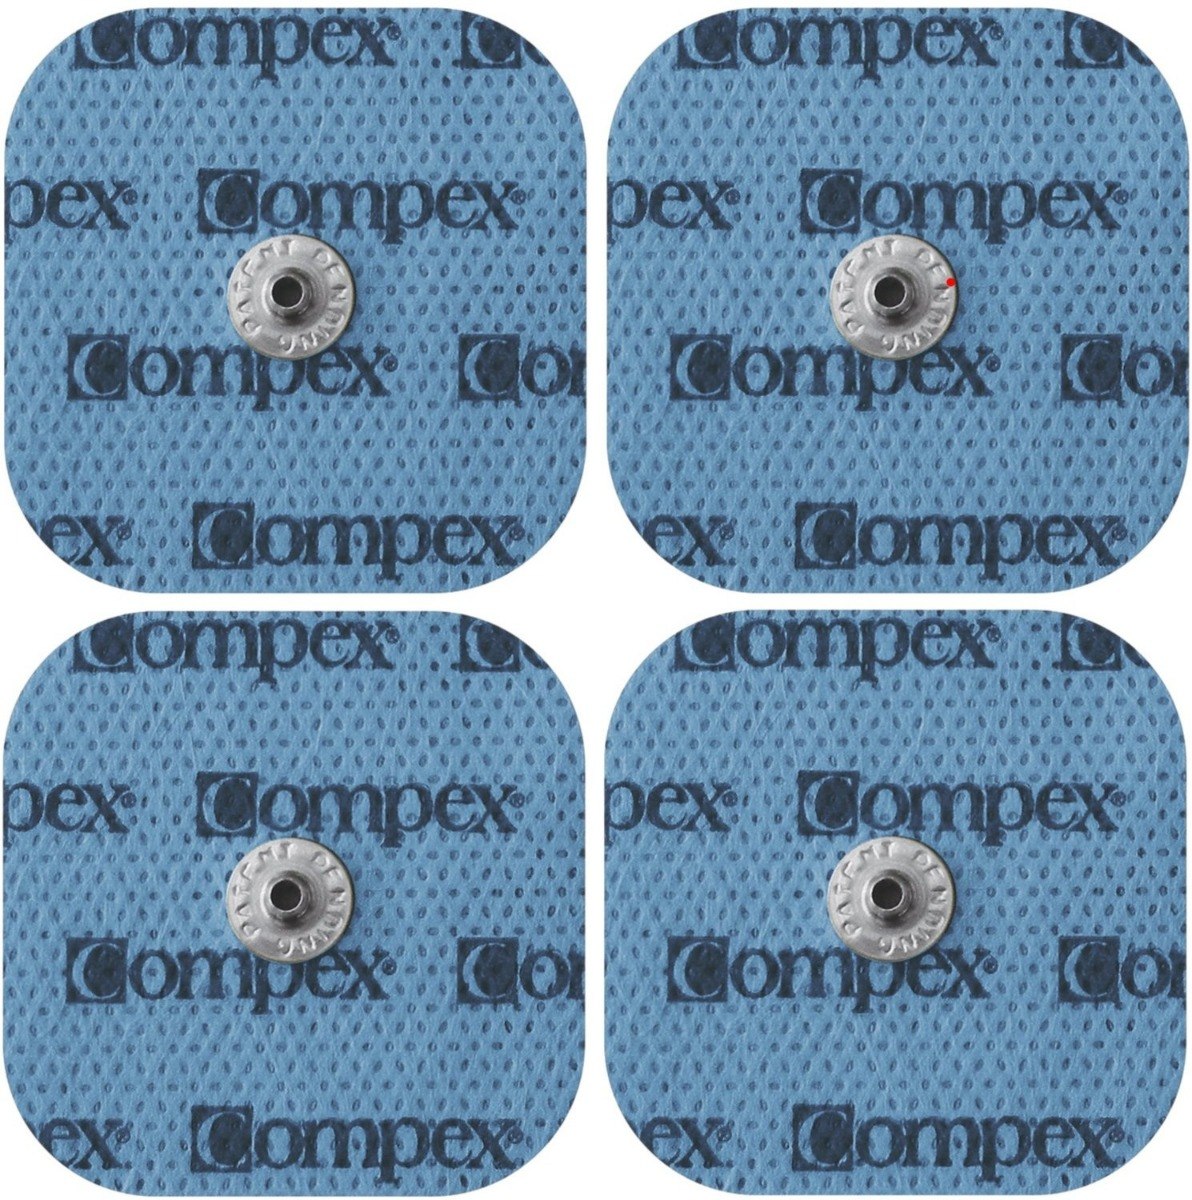 6 Electrodos Parches 5x5 Y 10x5 Snap Compatibles Con Compex